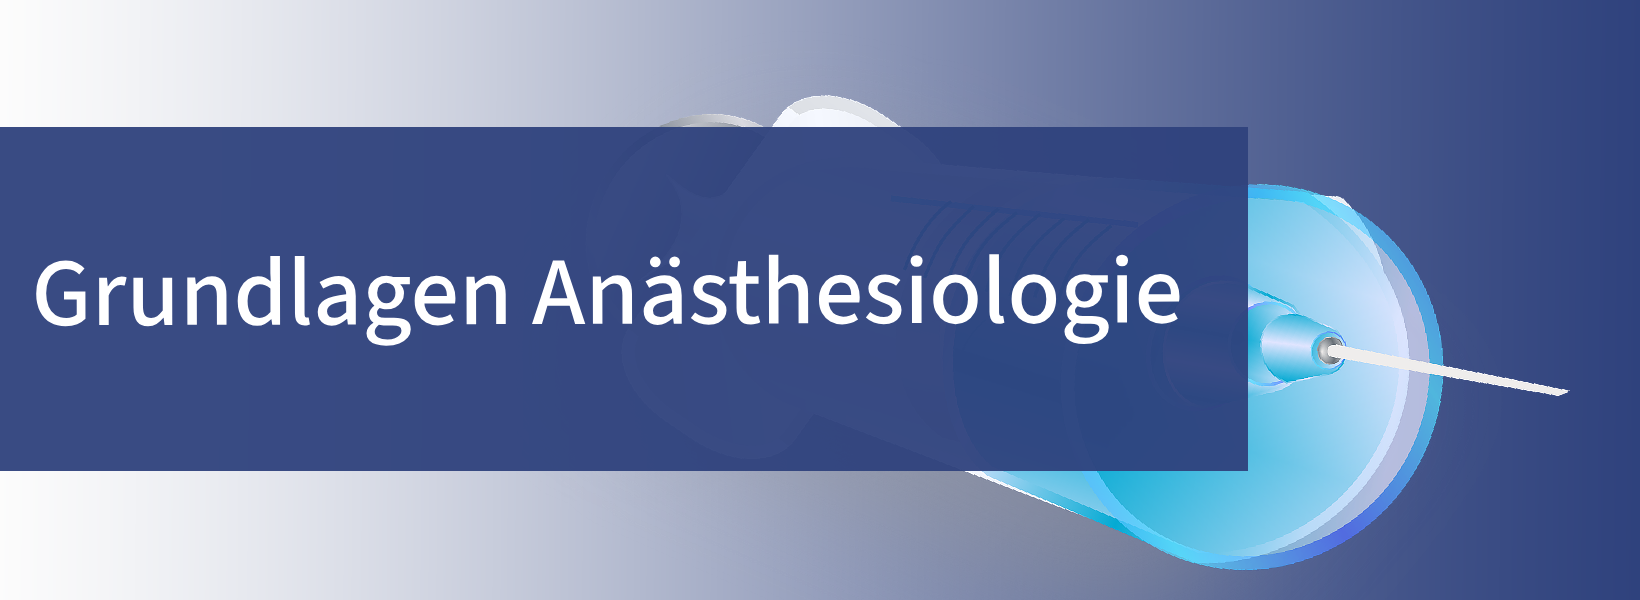 Facharztausbildung Anästhesiologie